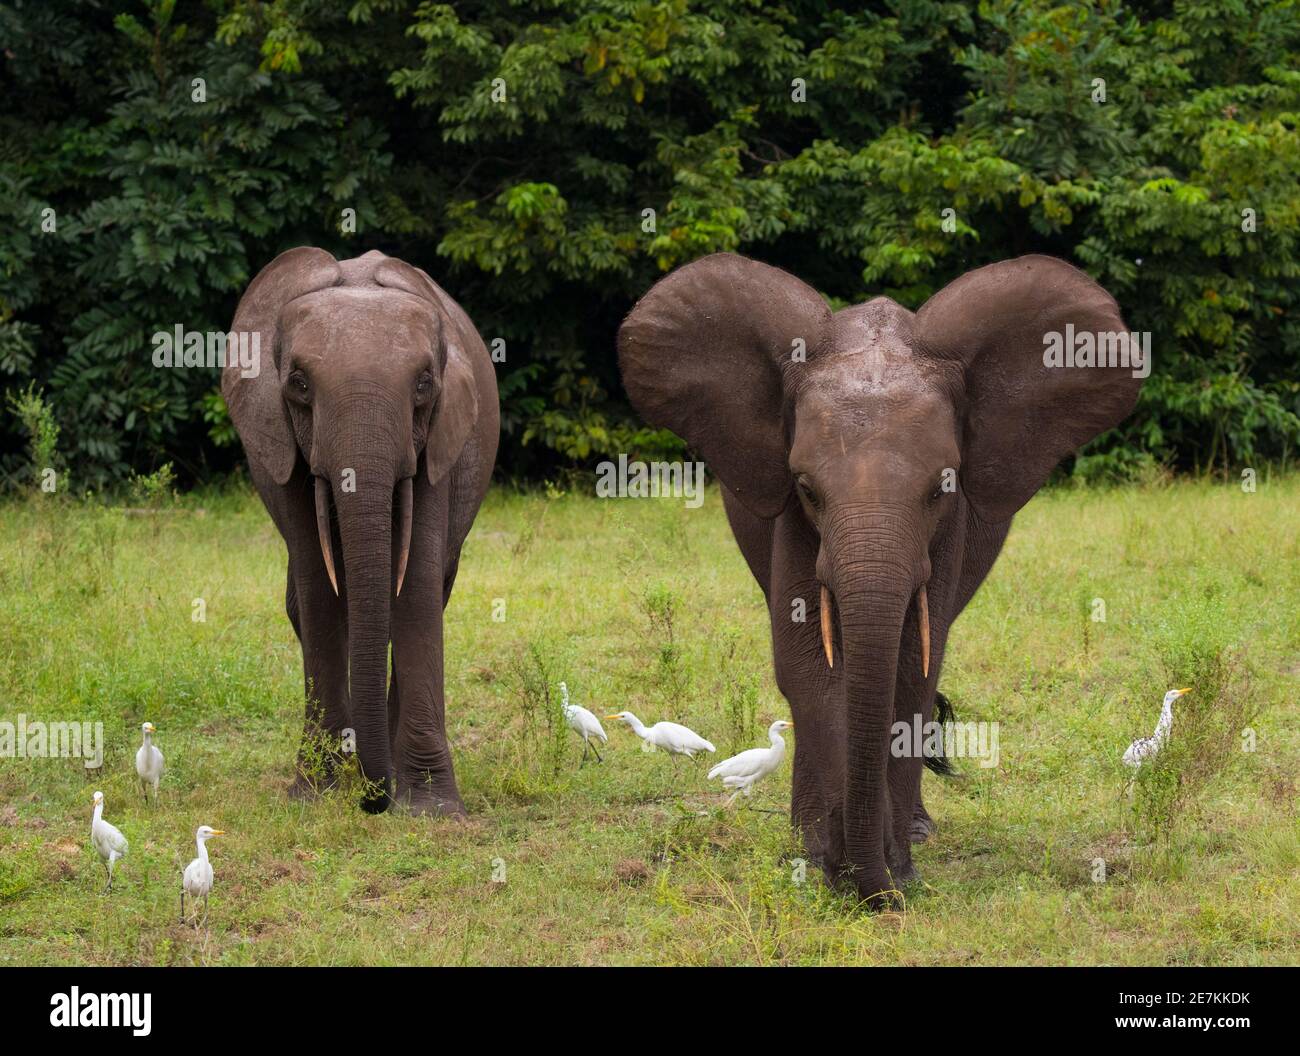 Elefanti della foresta africana (Loxodonta cyclotis) con Erette di bestiame (Bubulcus ibis), Parco Nazionale di Loango, Gabon. Foto Stock